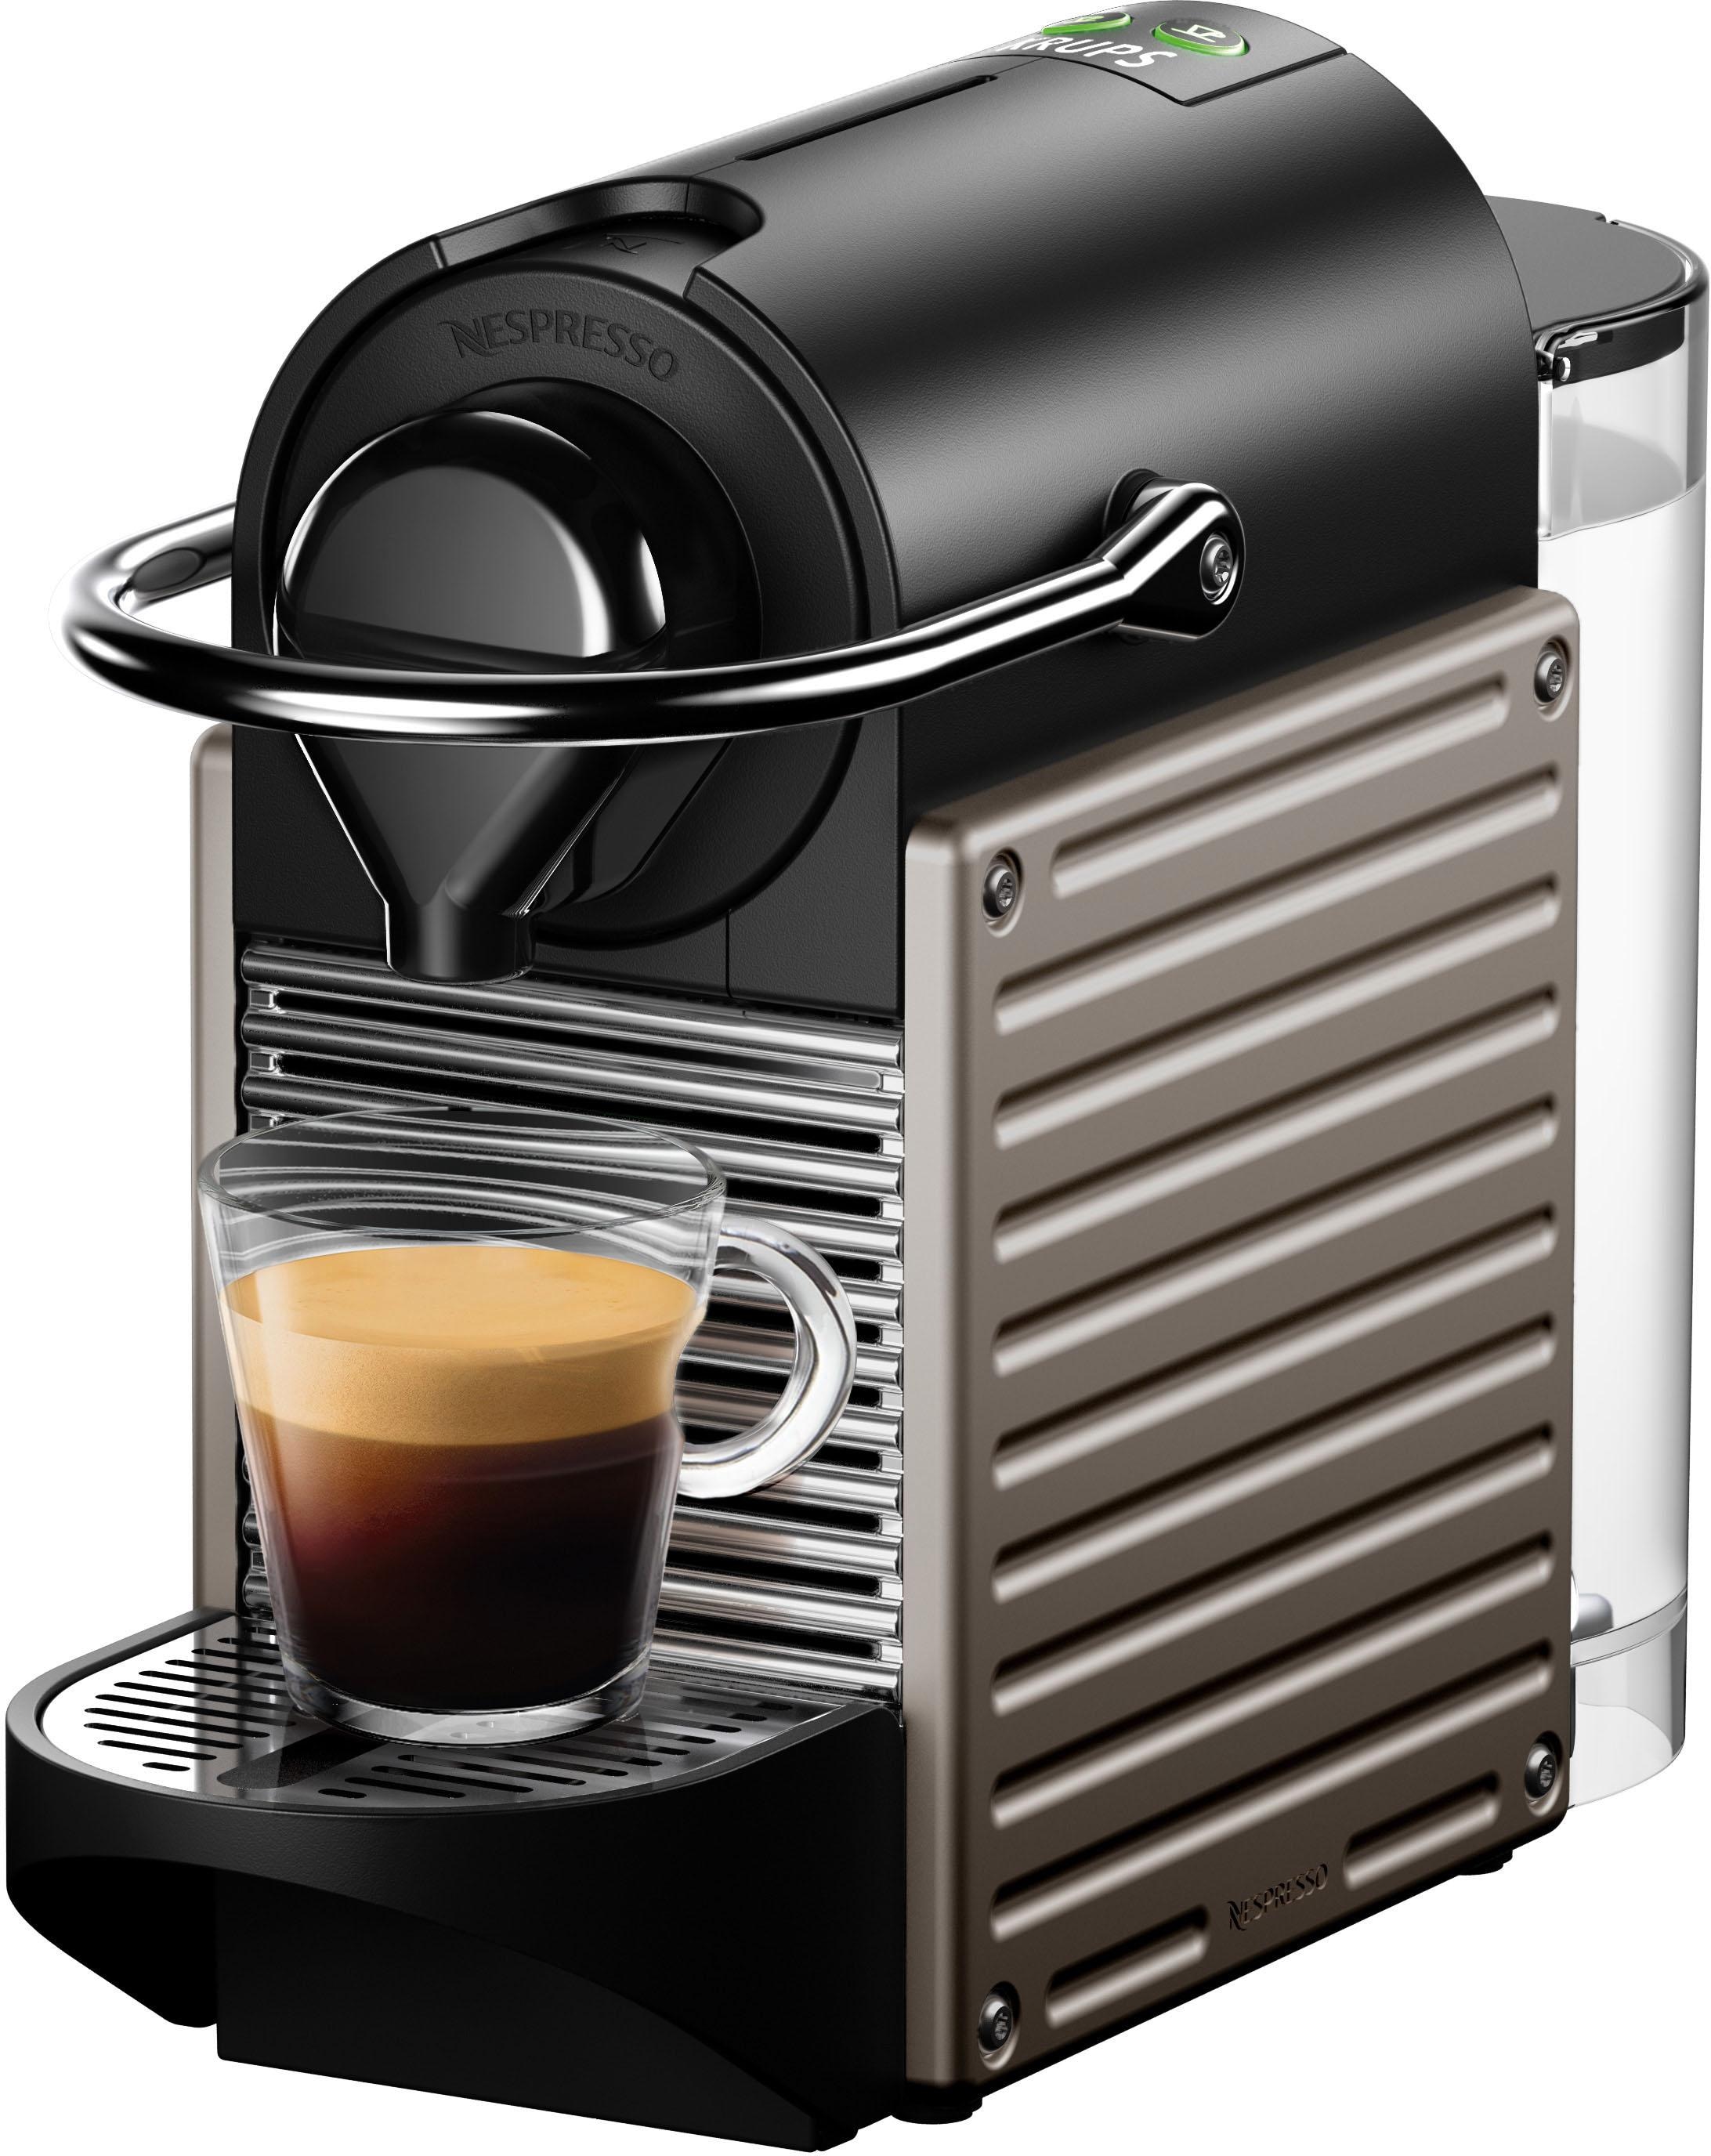 Nespresso XN304T jetzt Kapselmaschine %Sale im Pixie